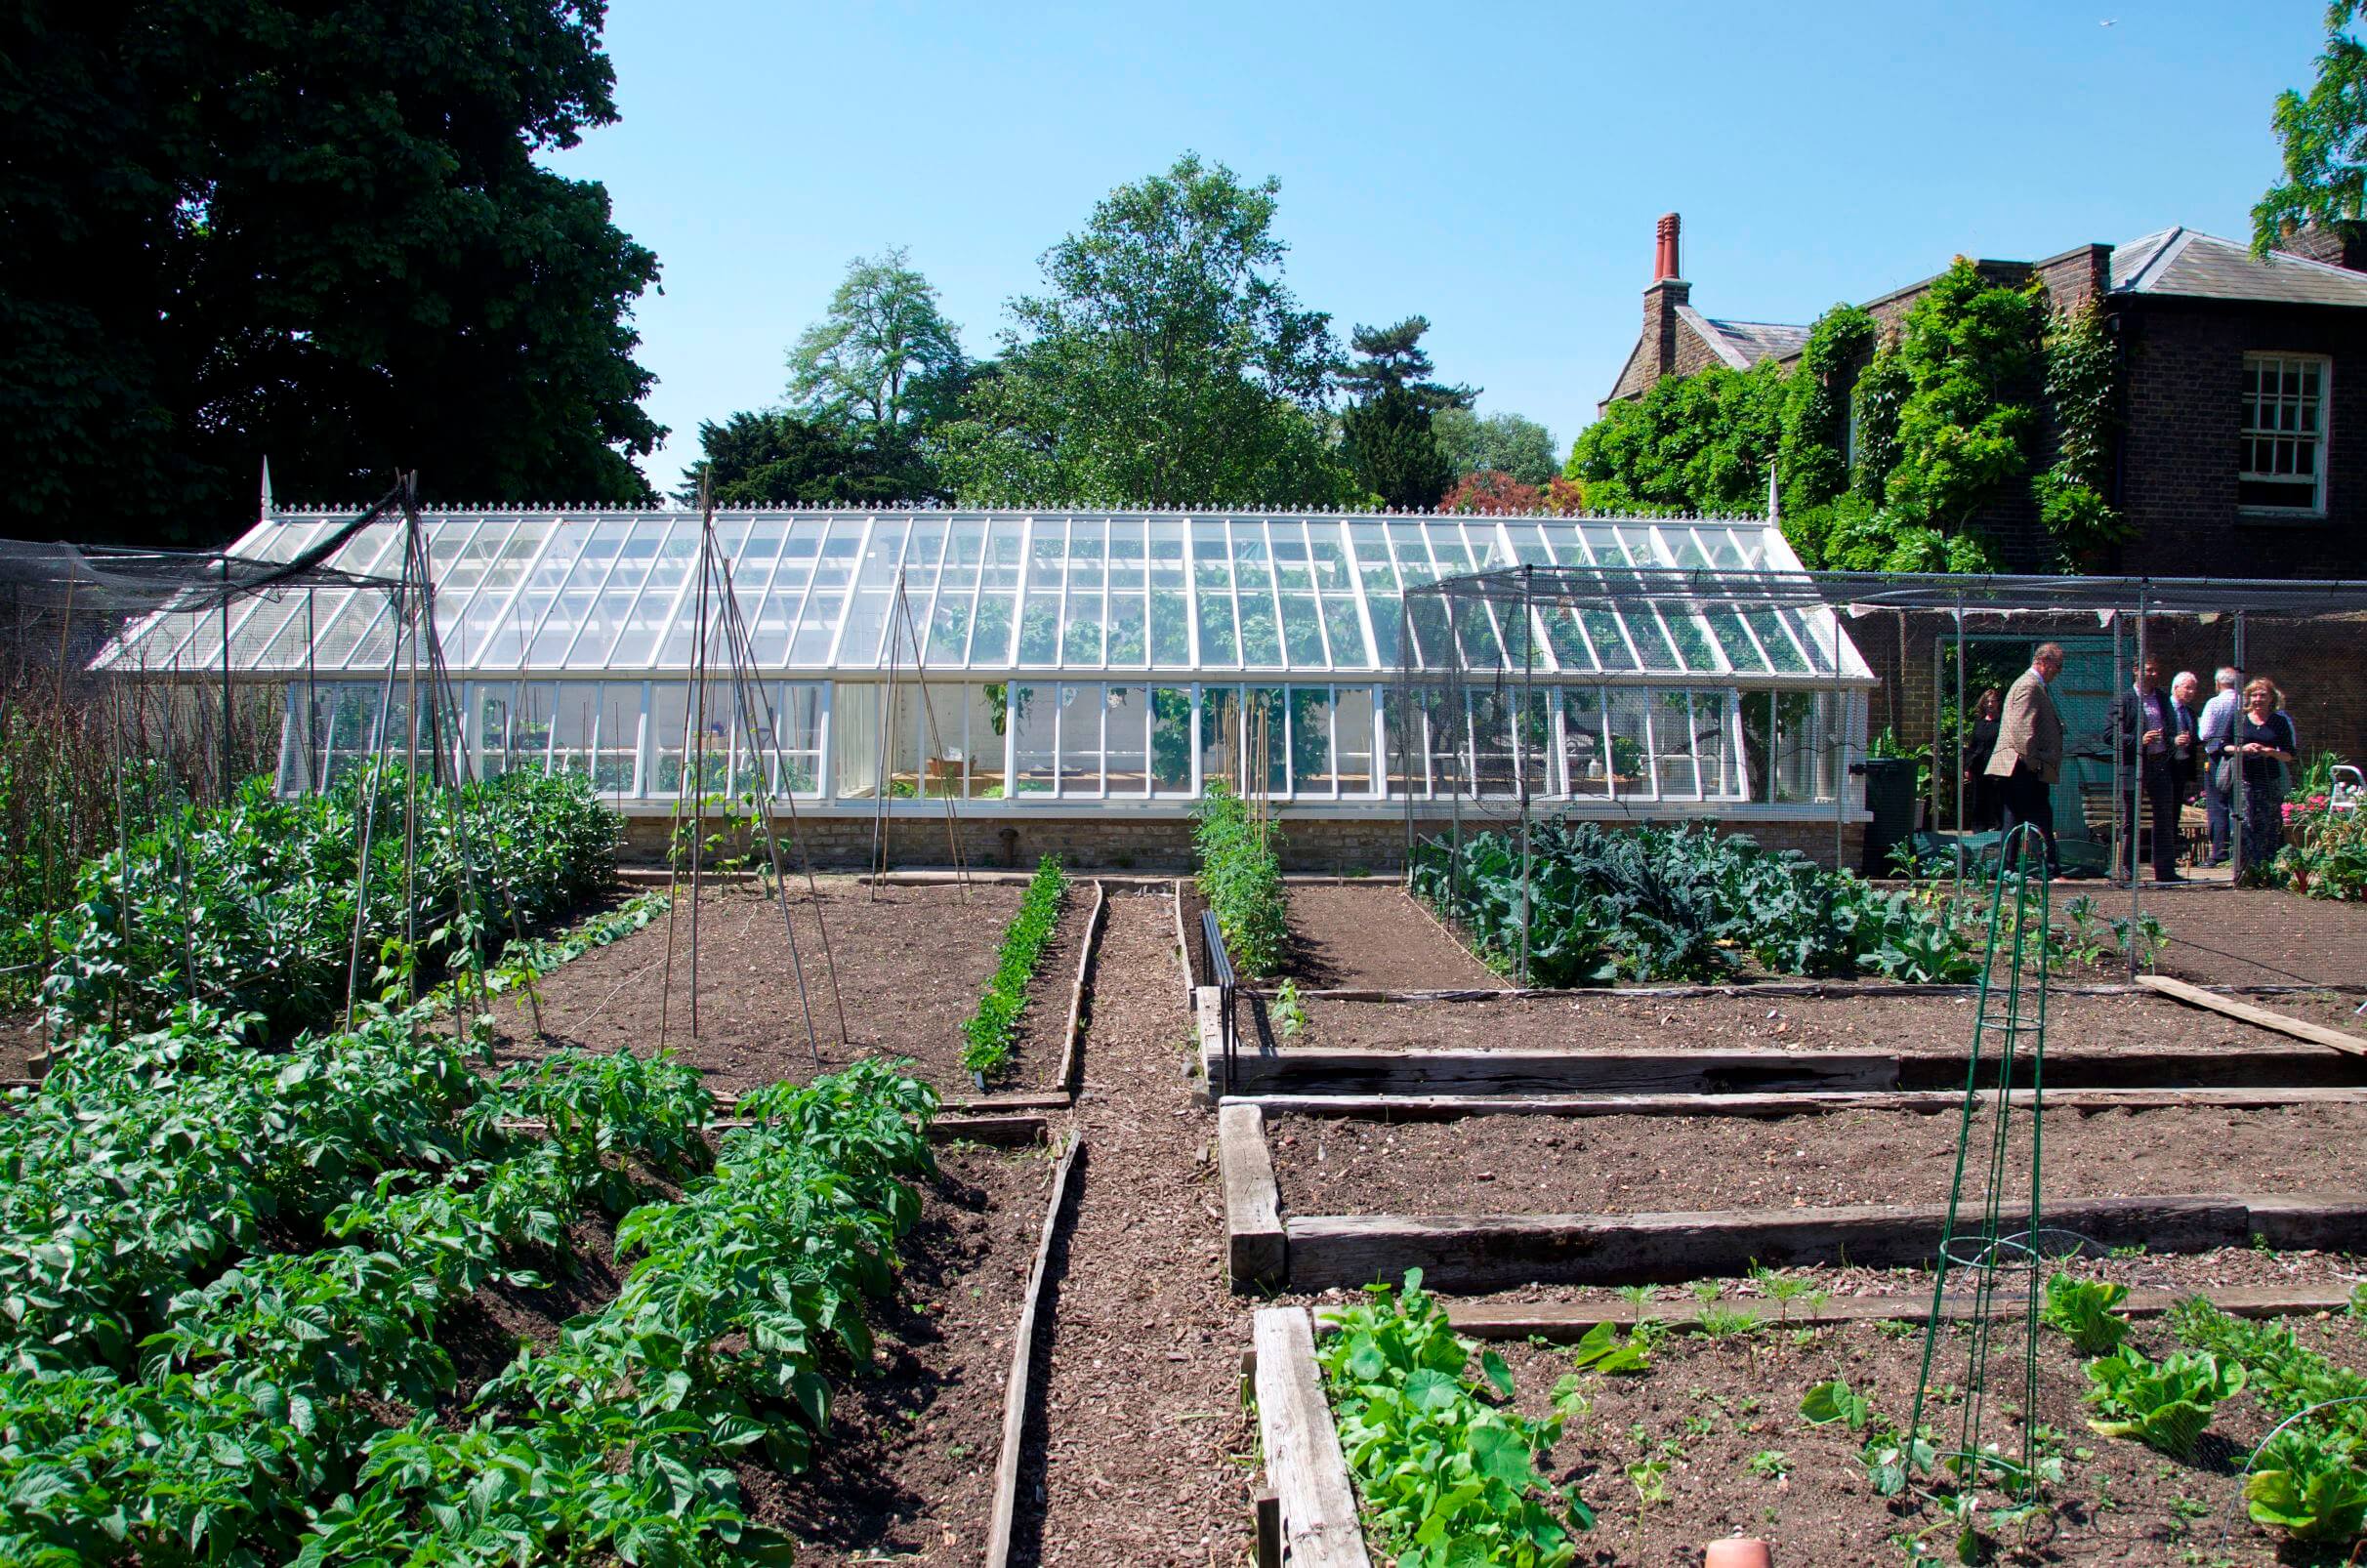 Directors greenhouse at Kew Gardens